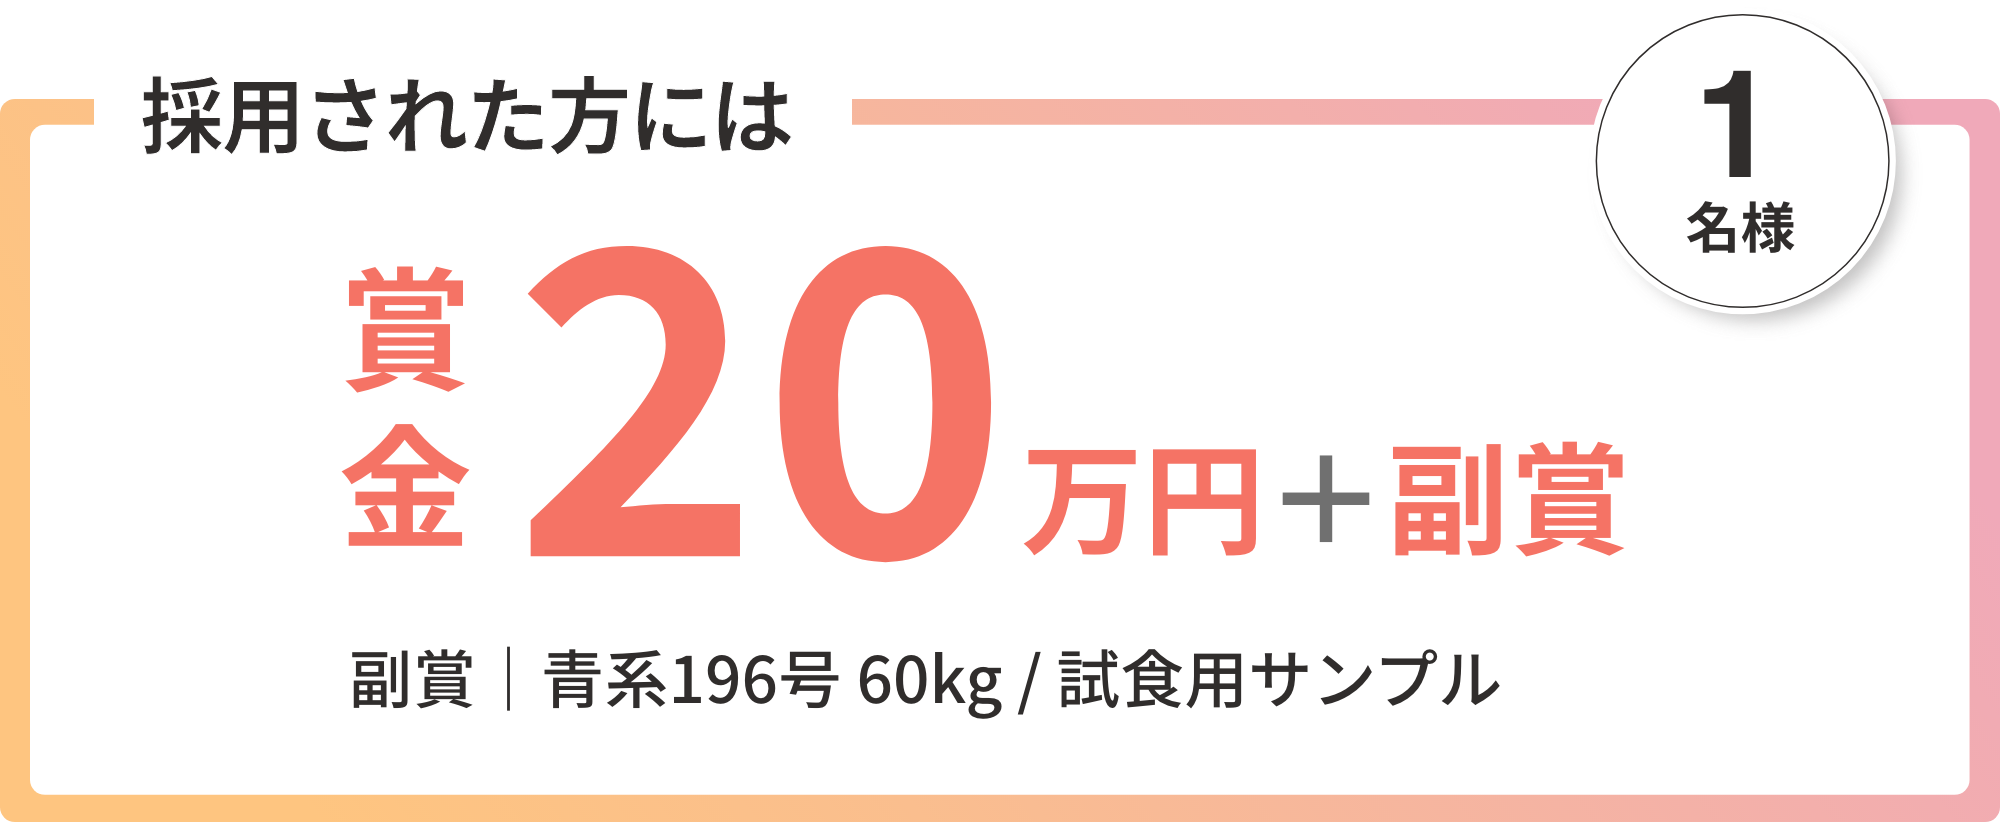 採用された方には 賞金：20万円｜副賞：青系196号 60kg / 試食用サンプル